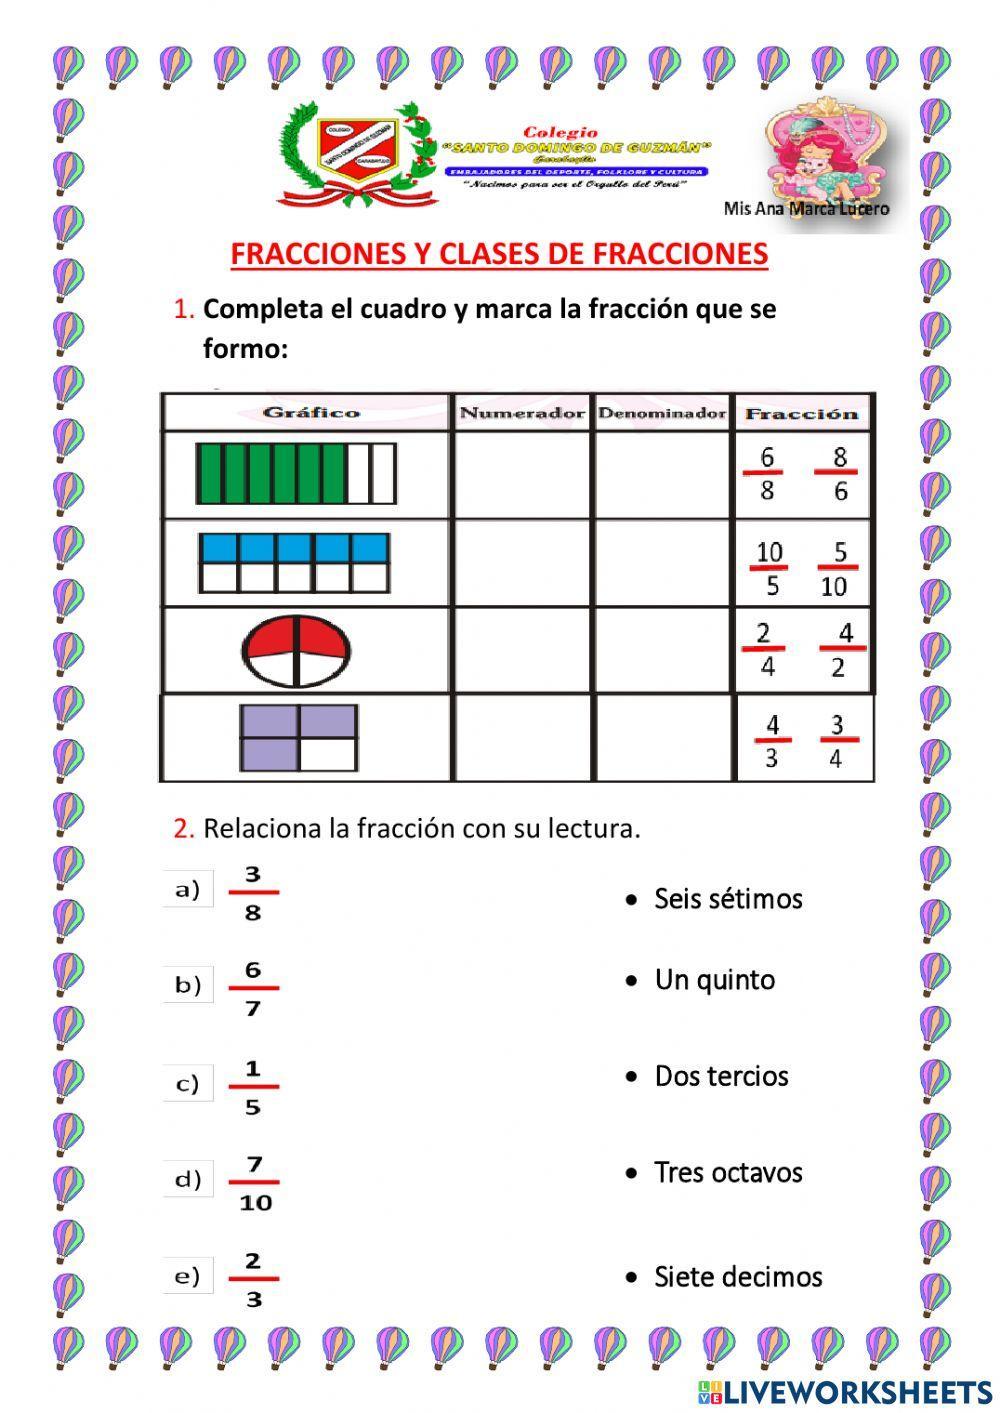 FRACCIONES Y CLASES DE FRACCIONES 